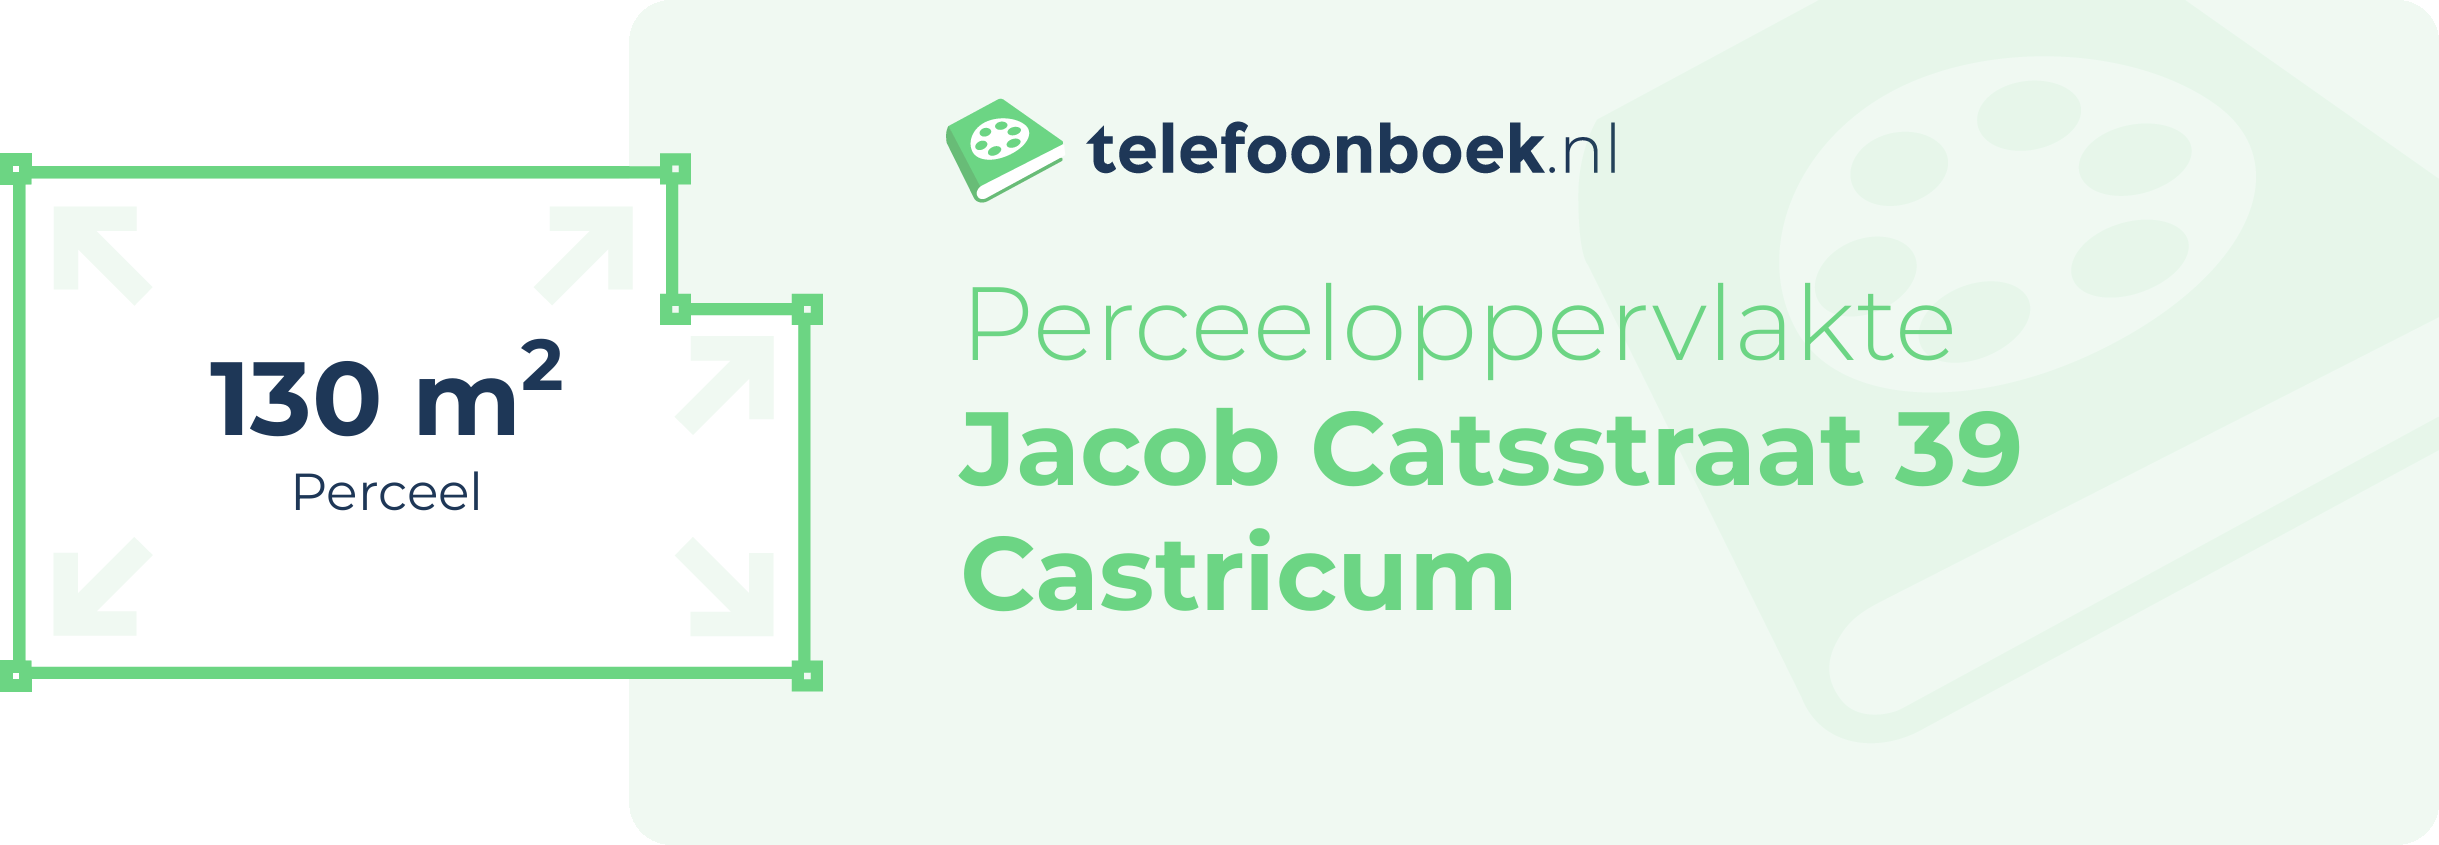 Perceeloppervlakte Jacob Catsstraat 39 Castricum